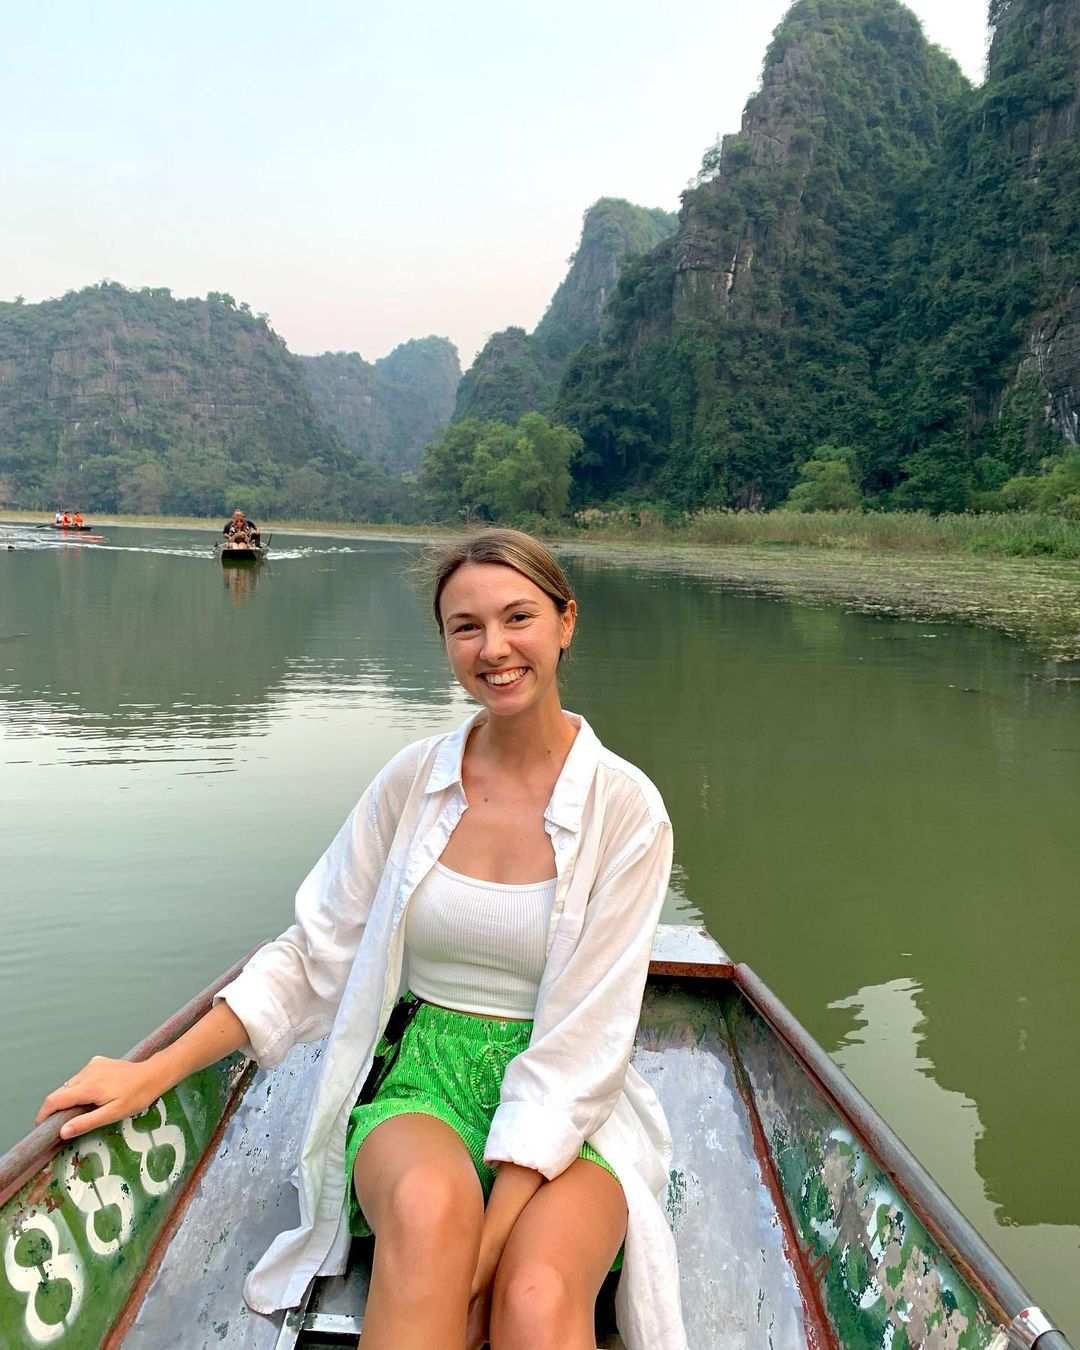 Du khách nước ngoài ngỡ ngàng trước cảnh này khi ngồi thuyền trải nghiệm ở Ninh Bình - Ảnh 1.